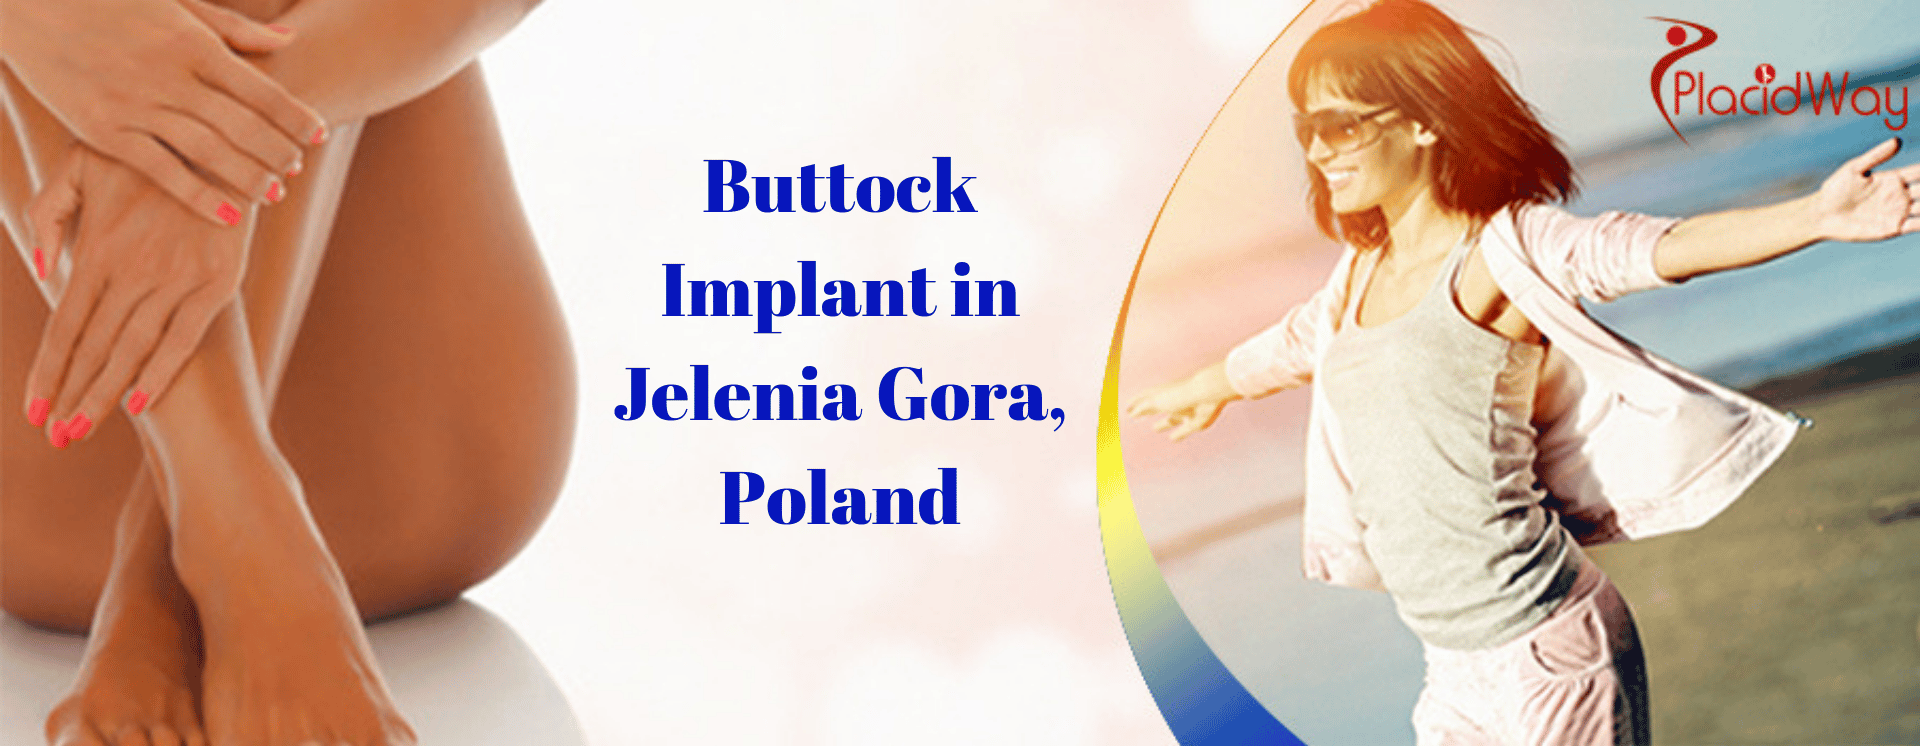 Buttock Implant in Jelenia Gora, Poland